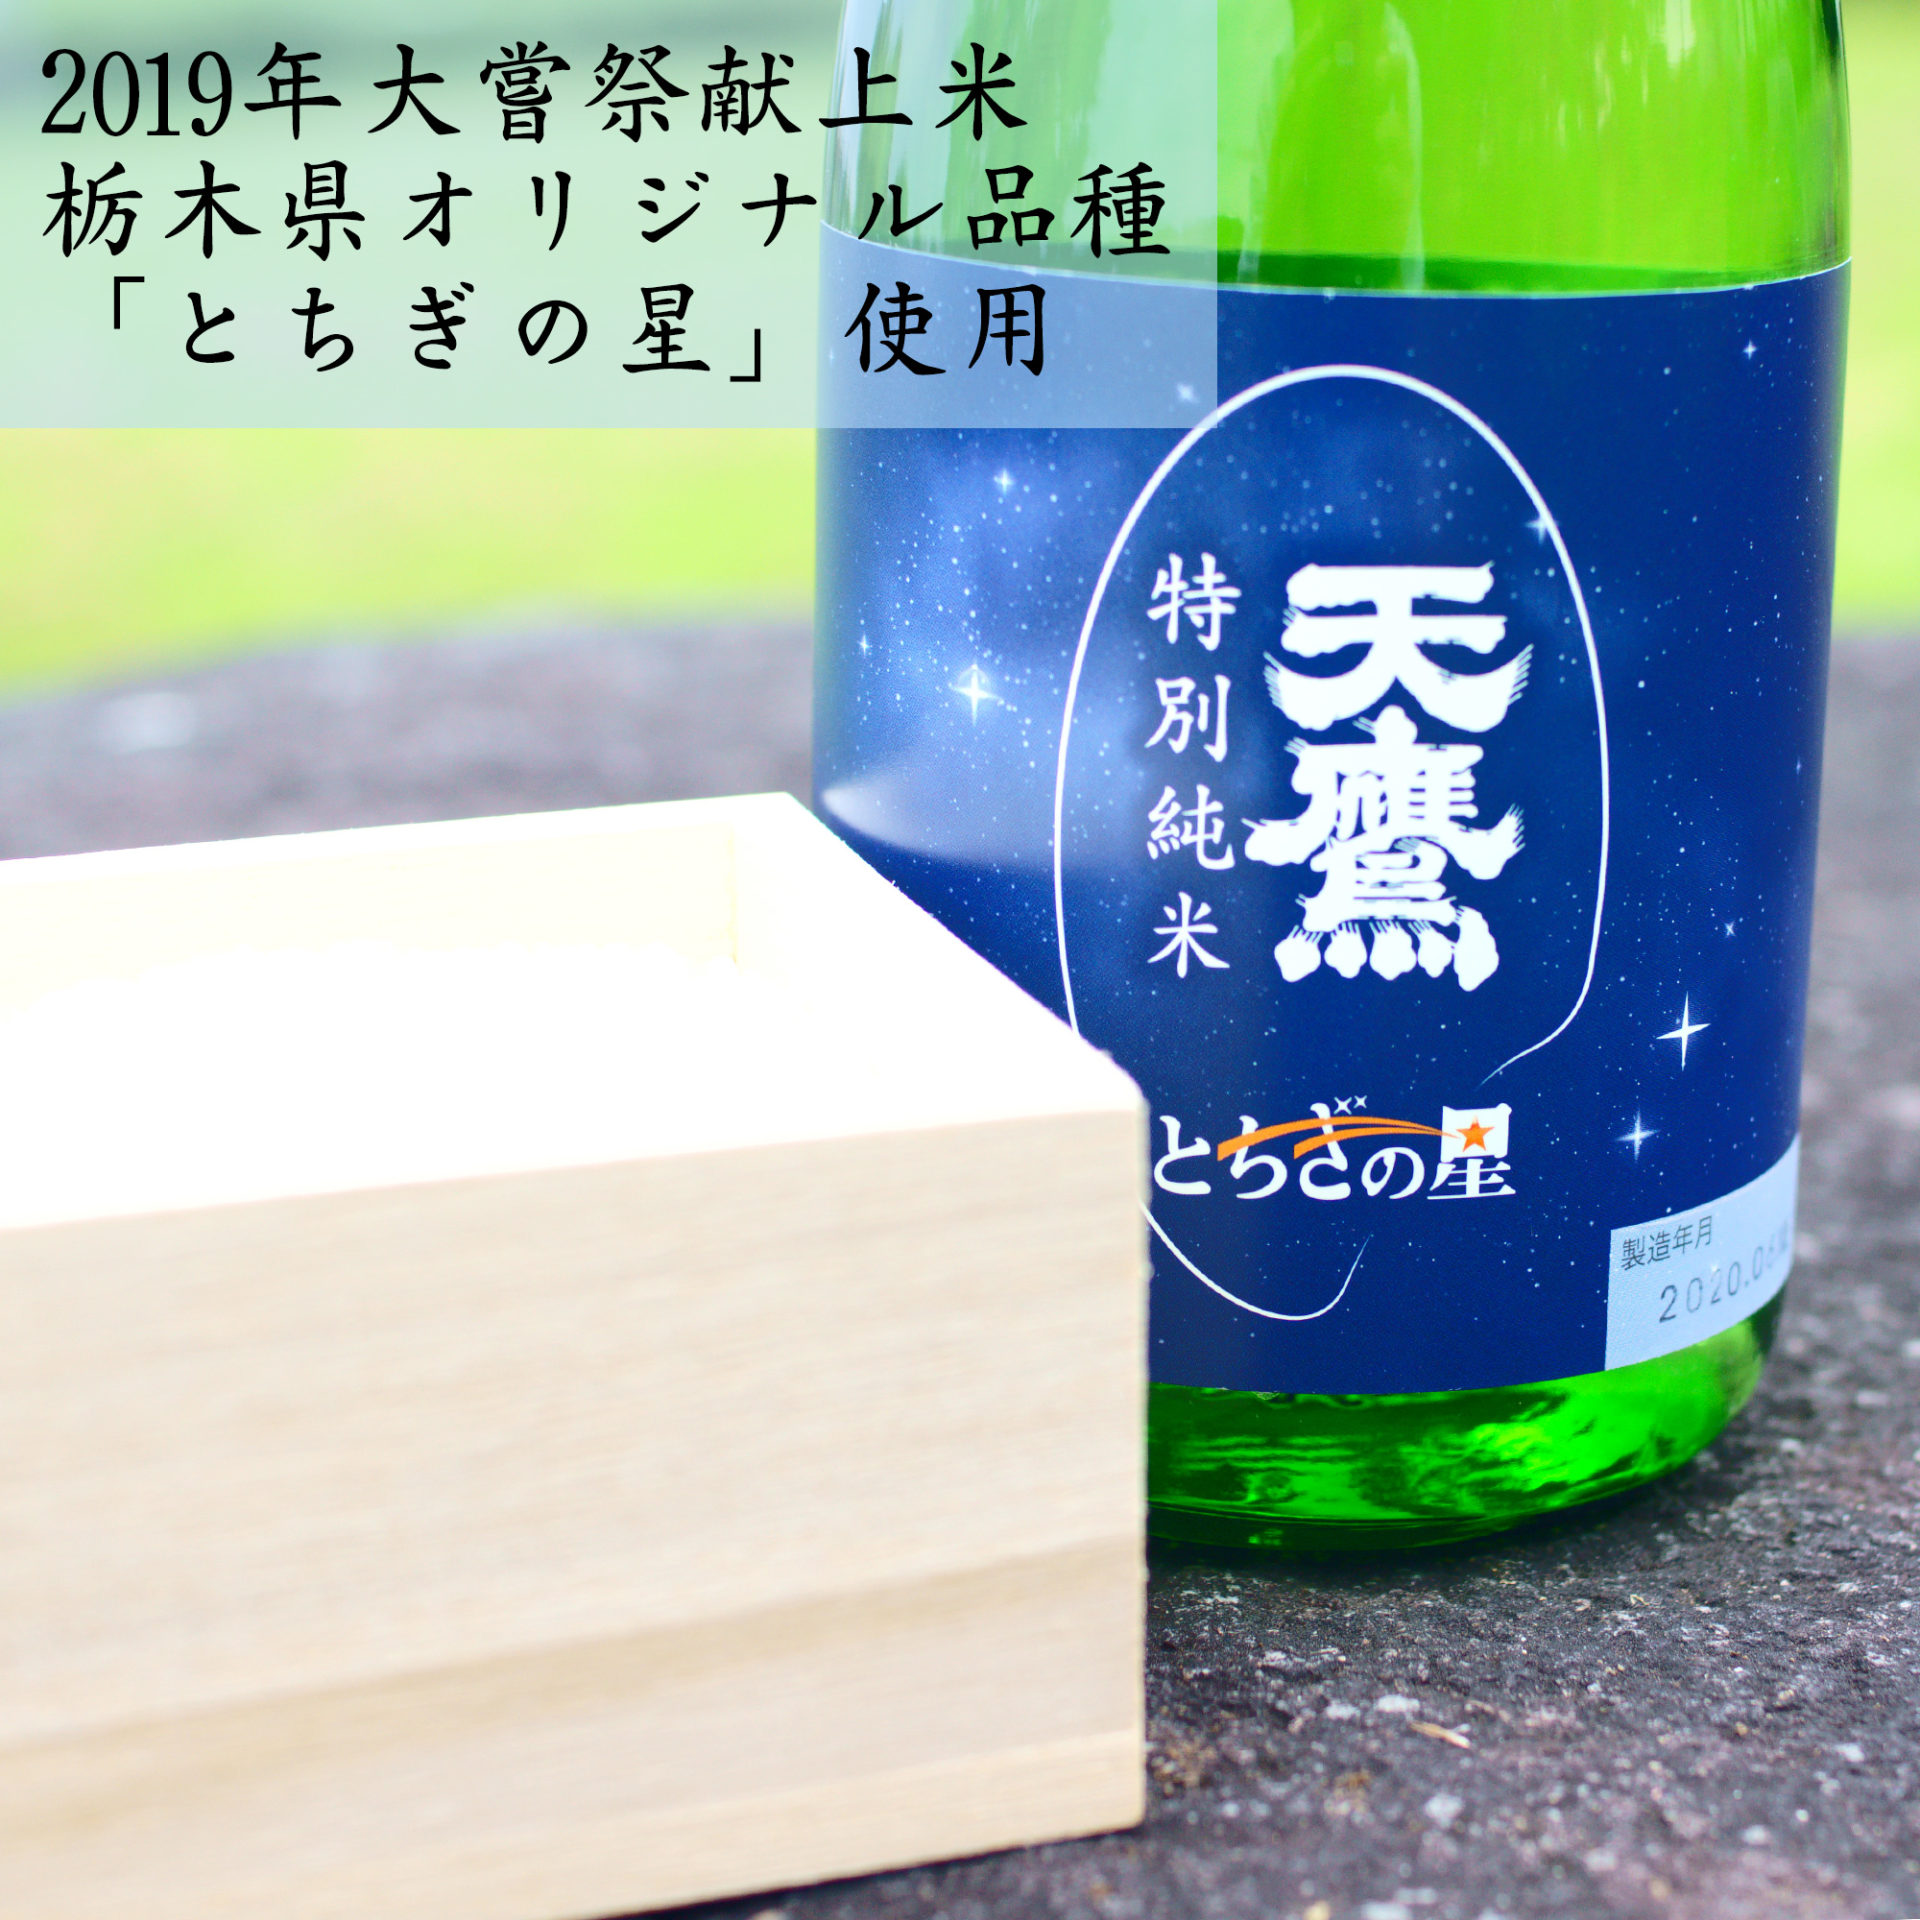 天鷹 特別純米 とちぎの星 720ml(4合瓶) | 日本酒 清酒